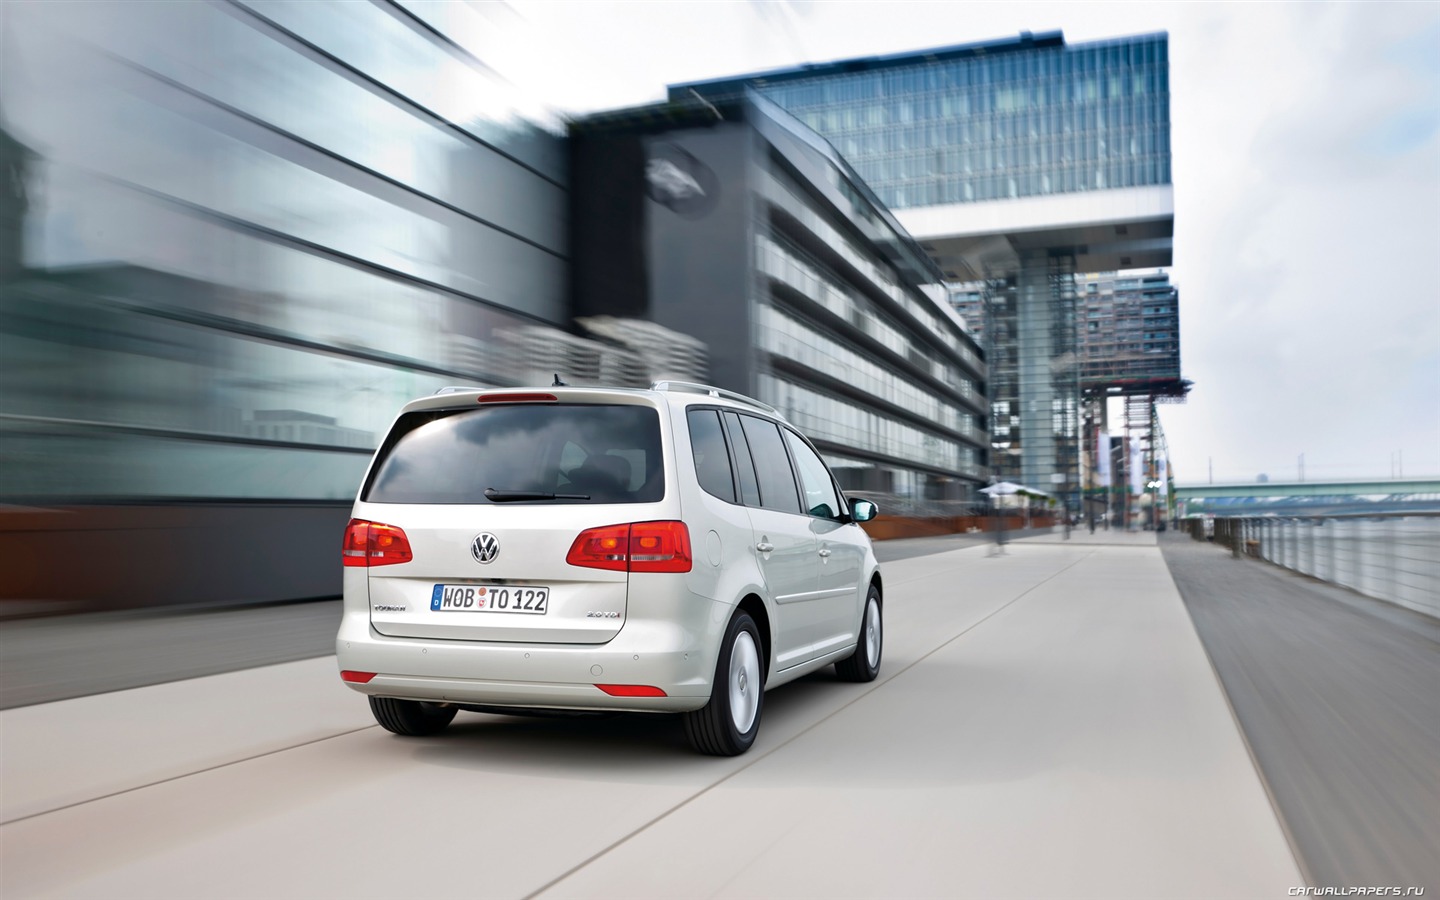 Volkswagen Touran TDI - 2010 大众3 - 1440x900